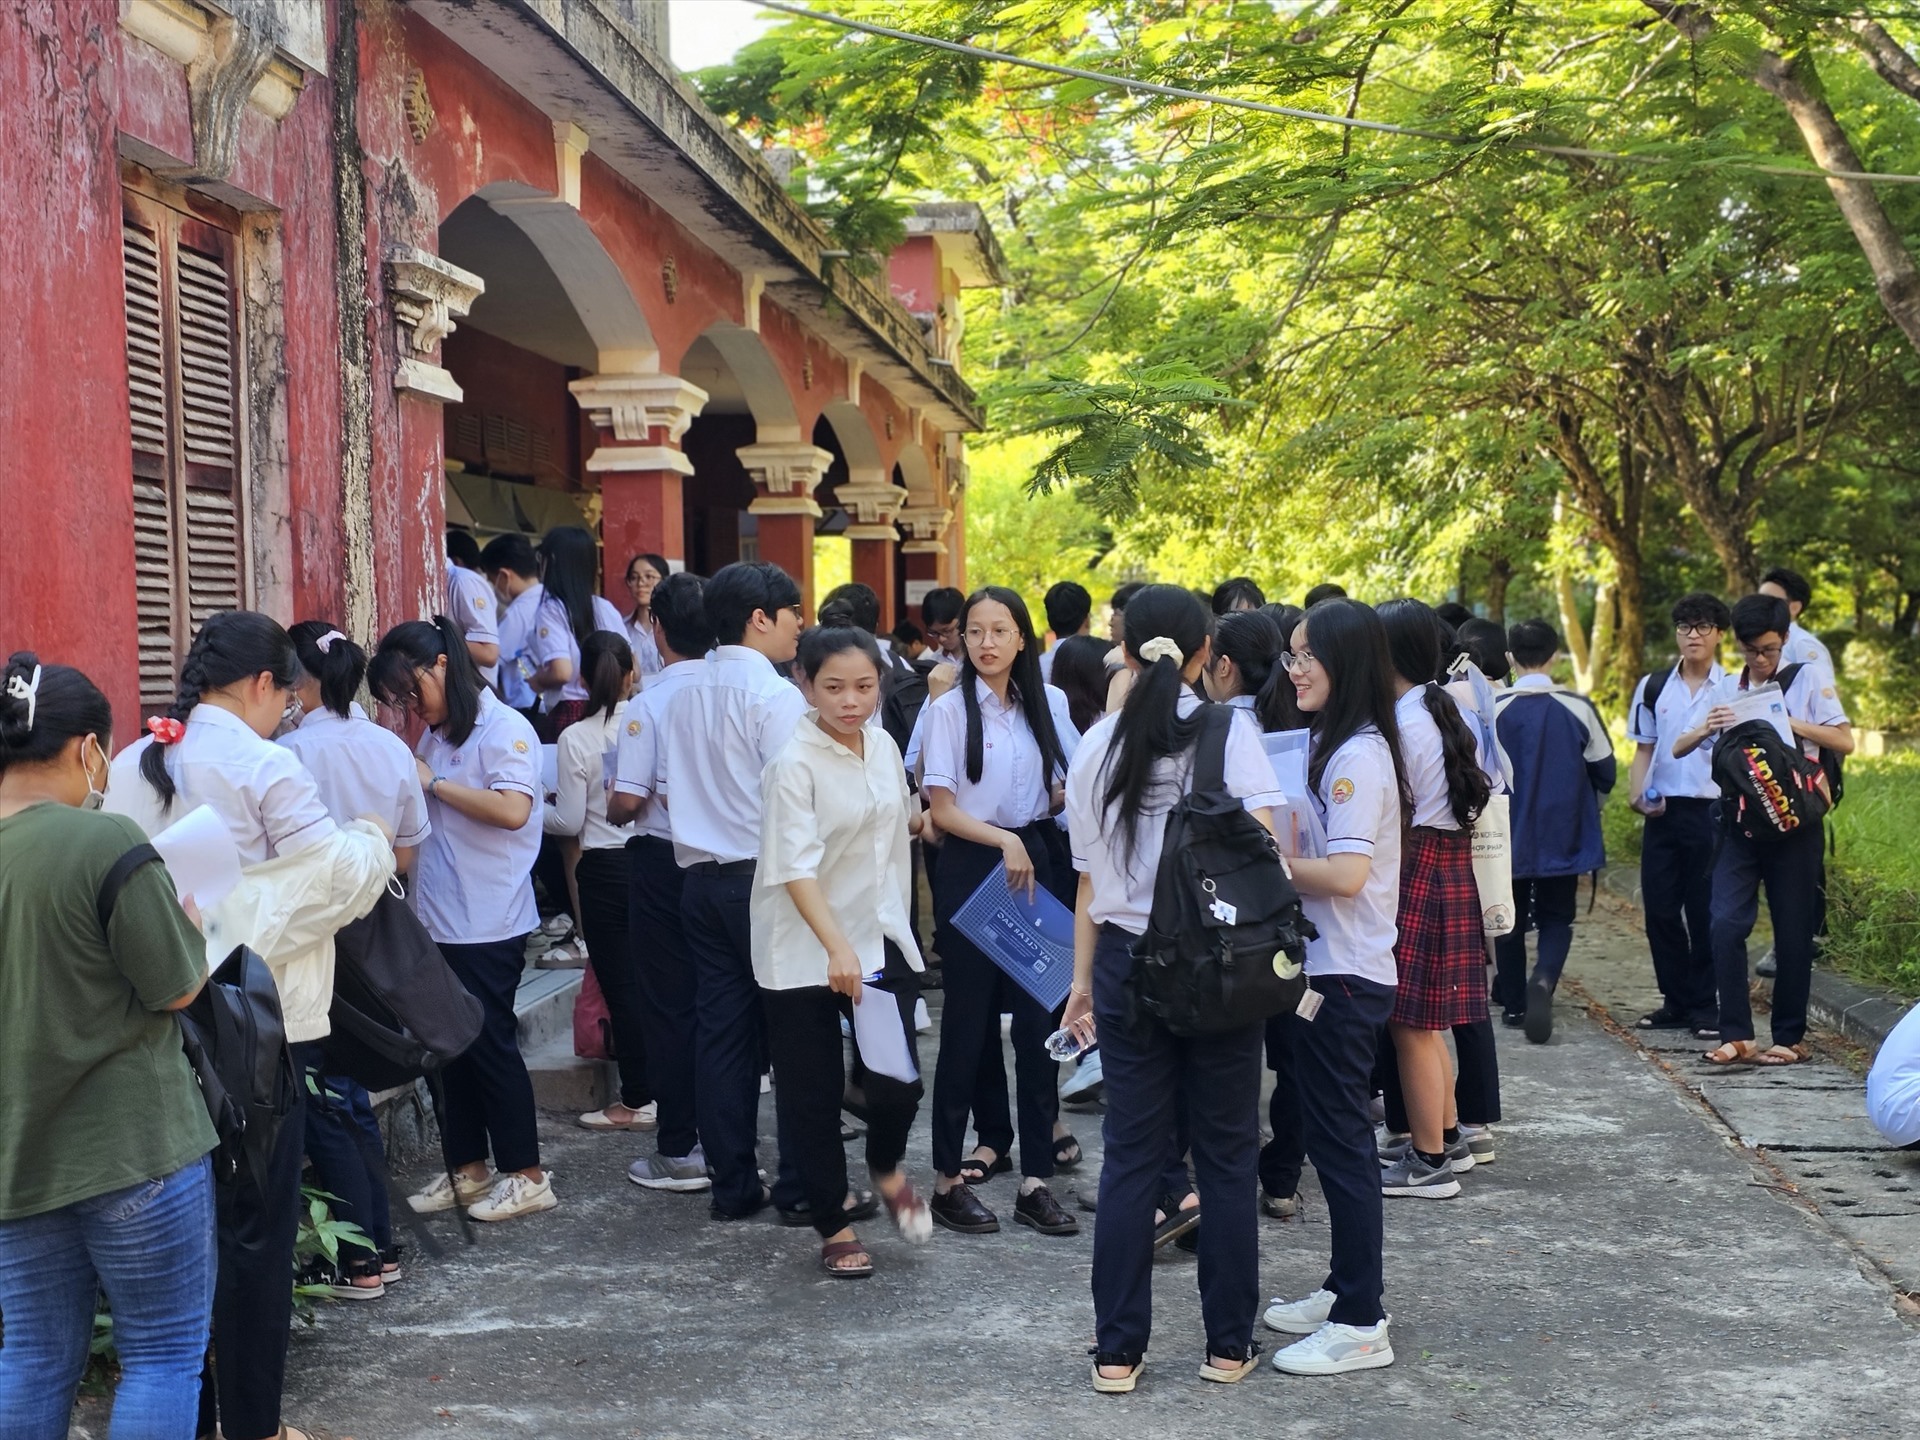 Sáng 28.6, cùng hơn 1 triệu thí sinh cả nước, hơn 13.000 thí sinh ở Thừa Thiên Huế dự thi môn Văn (120 phút) trong kỳ thi tốt nghiệp THPT Quốc gia 2023.